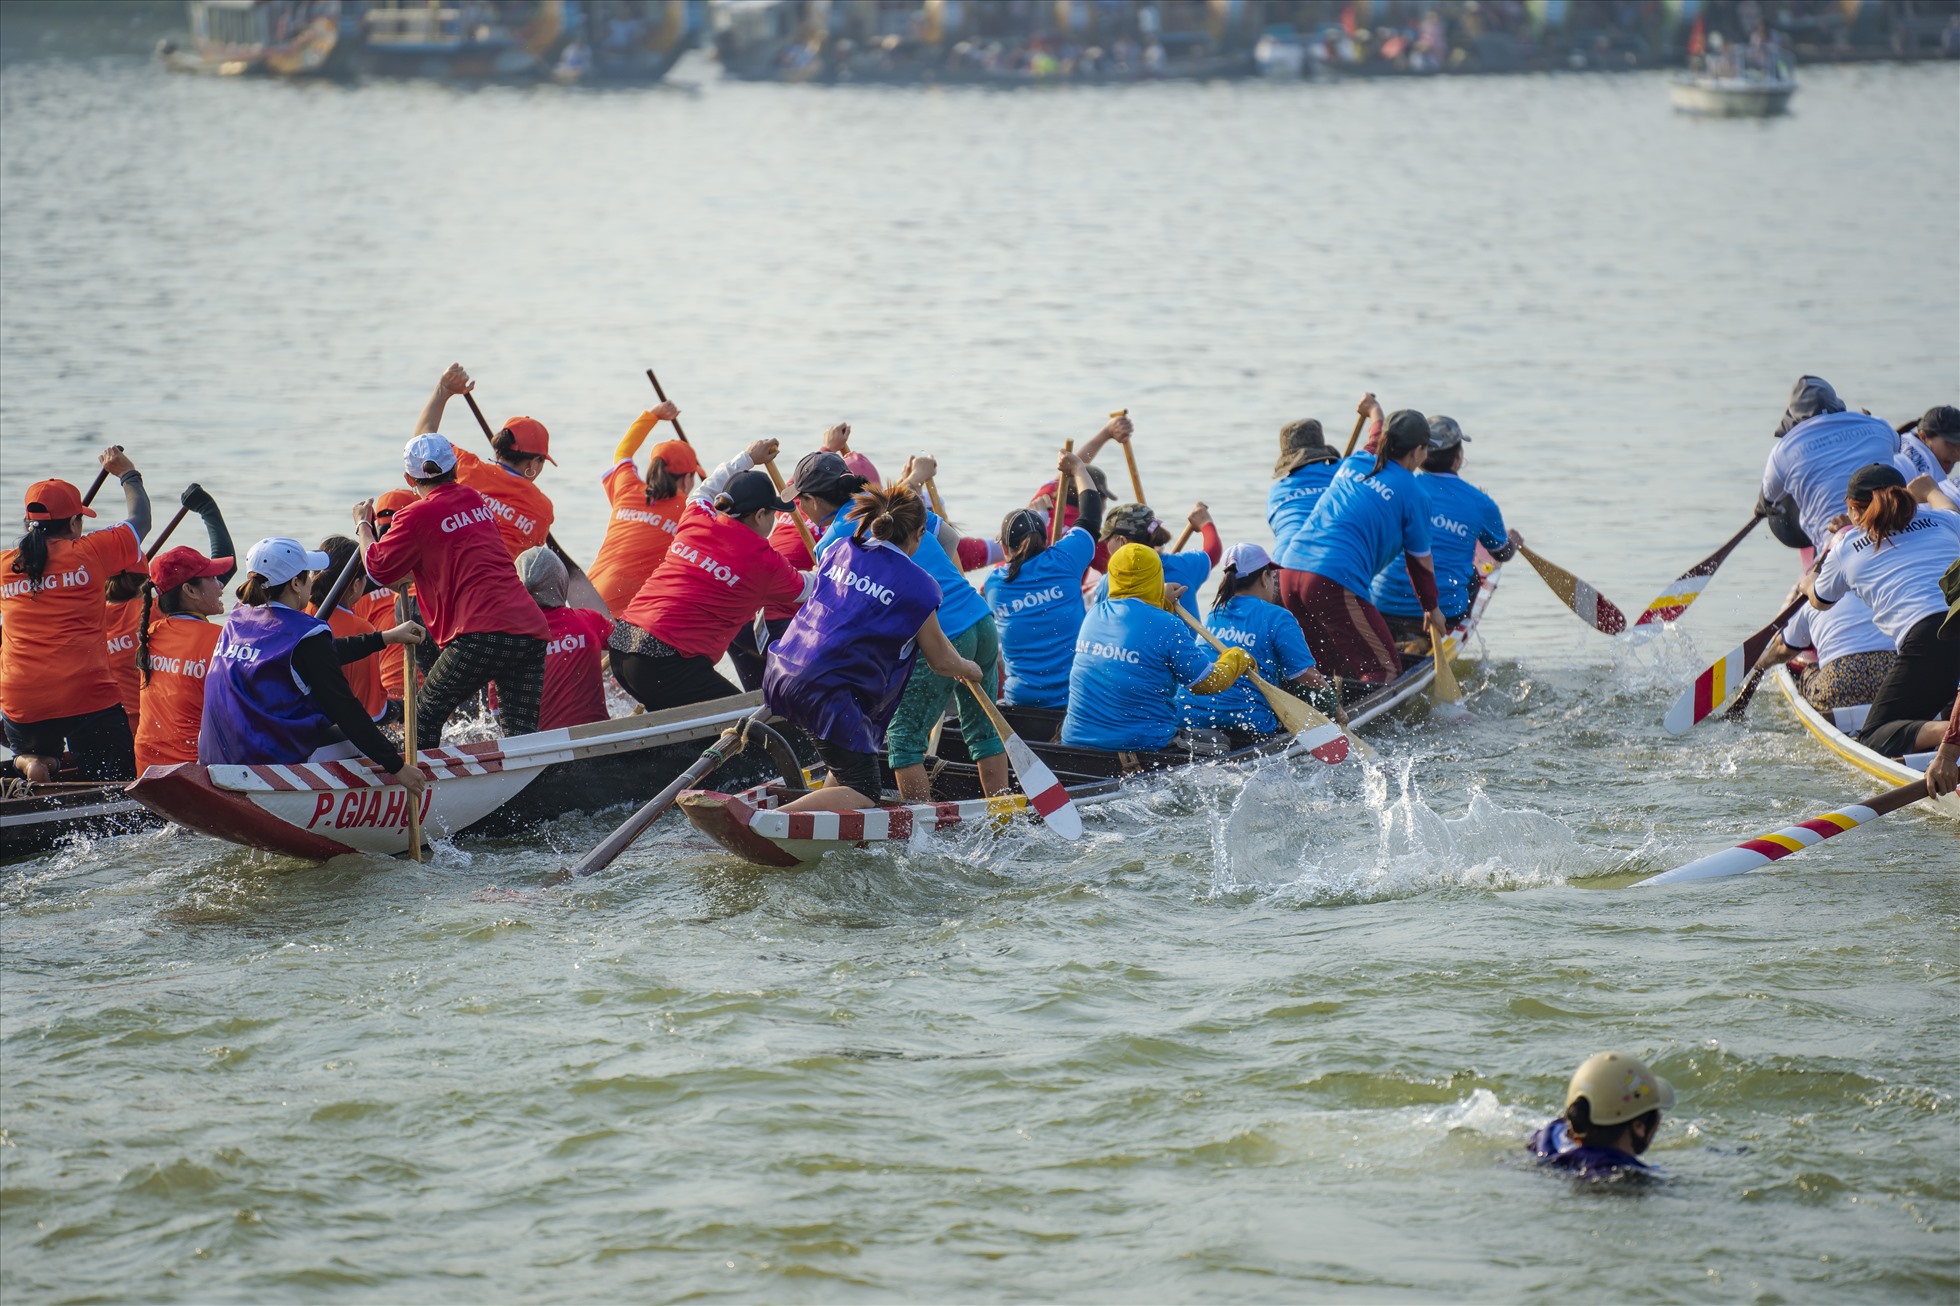 Ở dưới nước, các vận động viên tranh đua “từng mét nước”. Trên bờ, người dân cổ vũ, reo hò cho các đội đua tạo nên không khí tưng bừng cả một vùng sông Hương, sông Đông Ba.